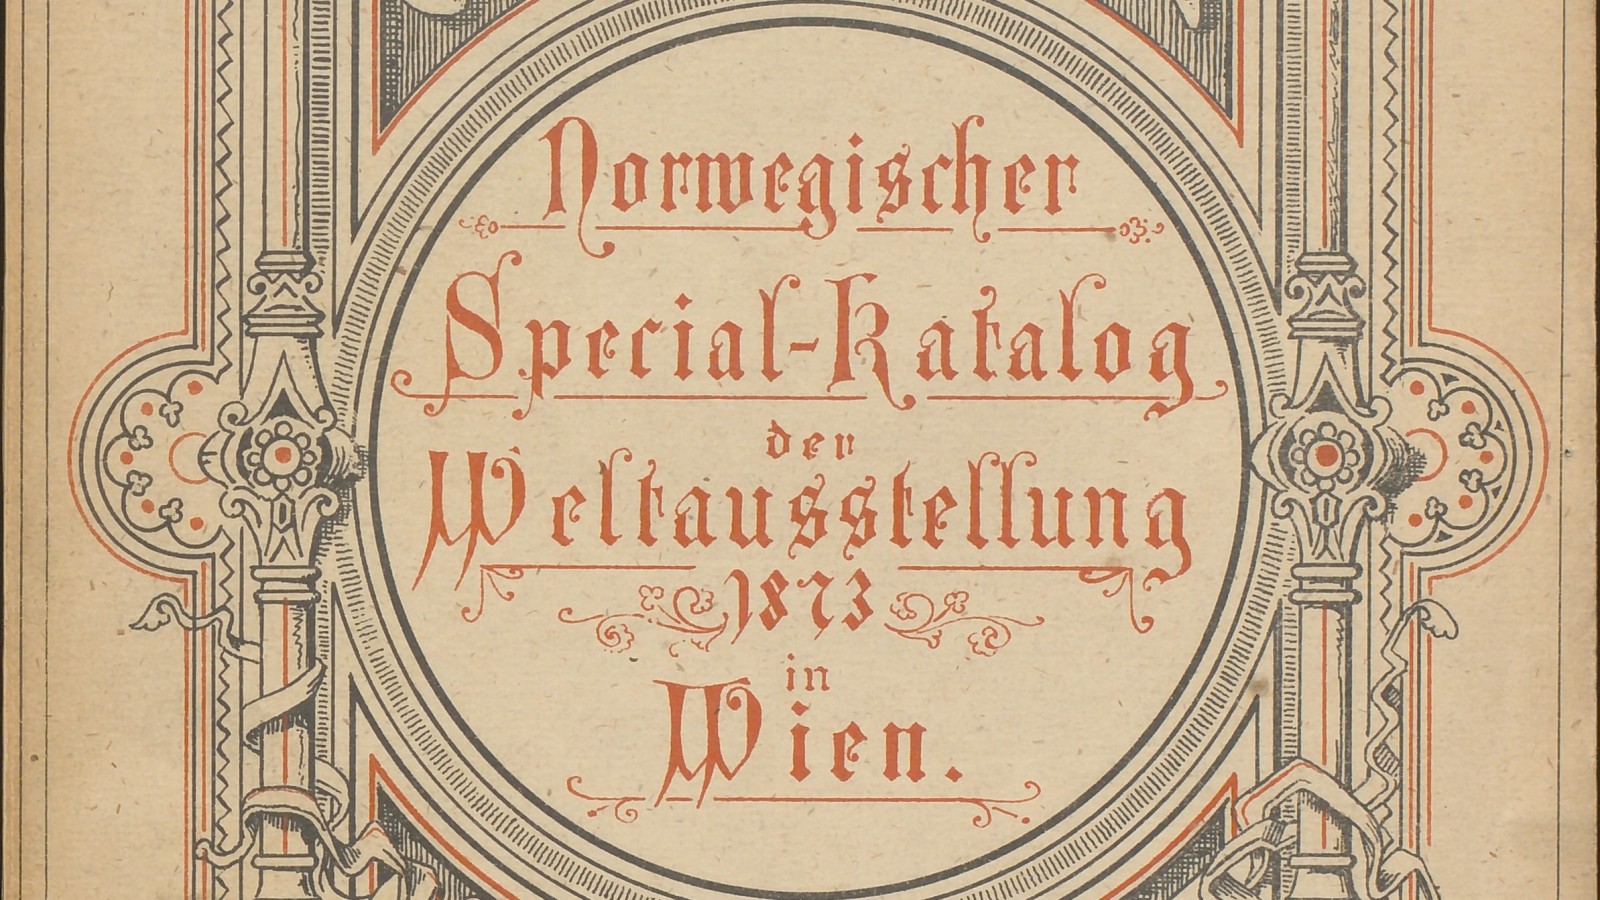 Norwegischer Spezial-Katalog der Weltausstellung 1873 in Wien